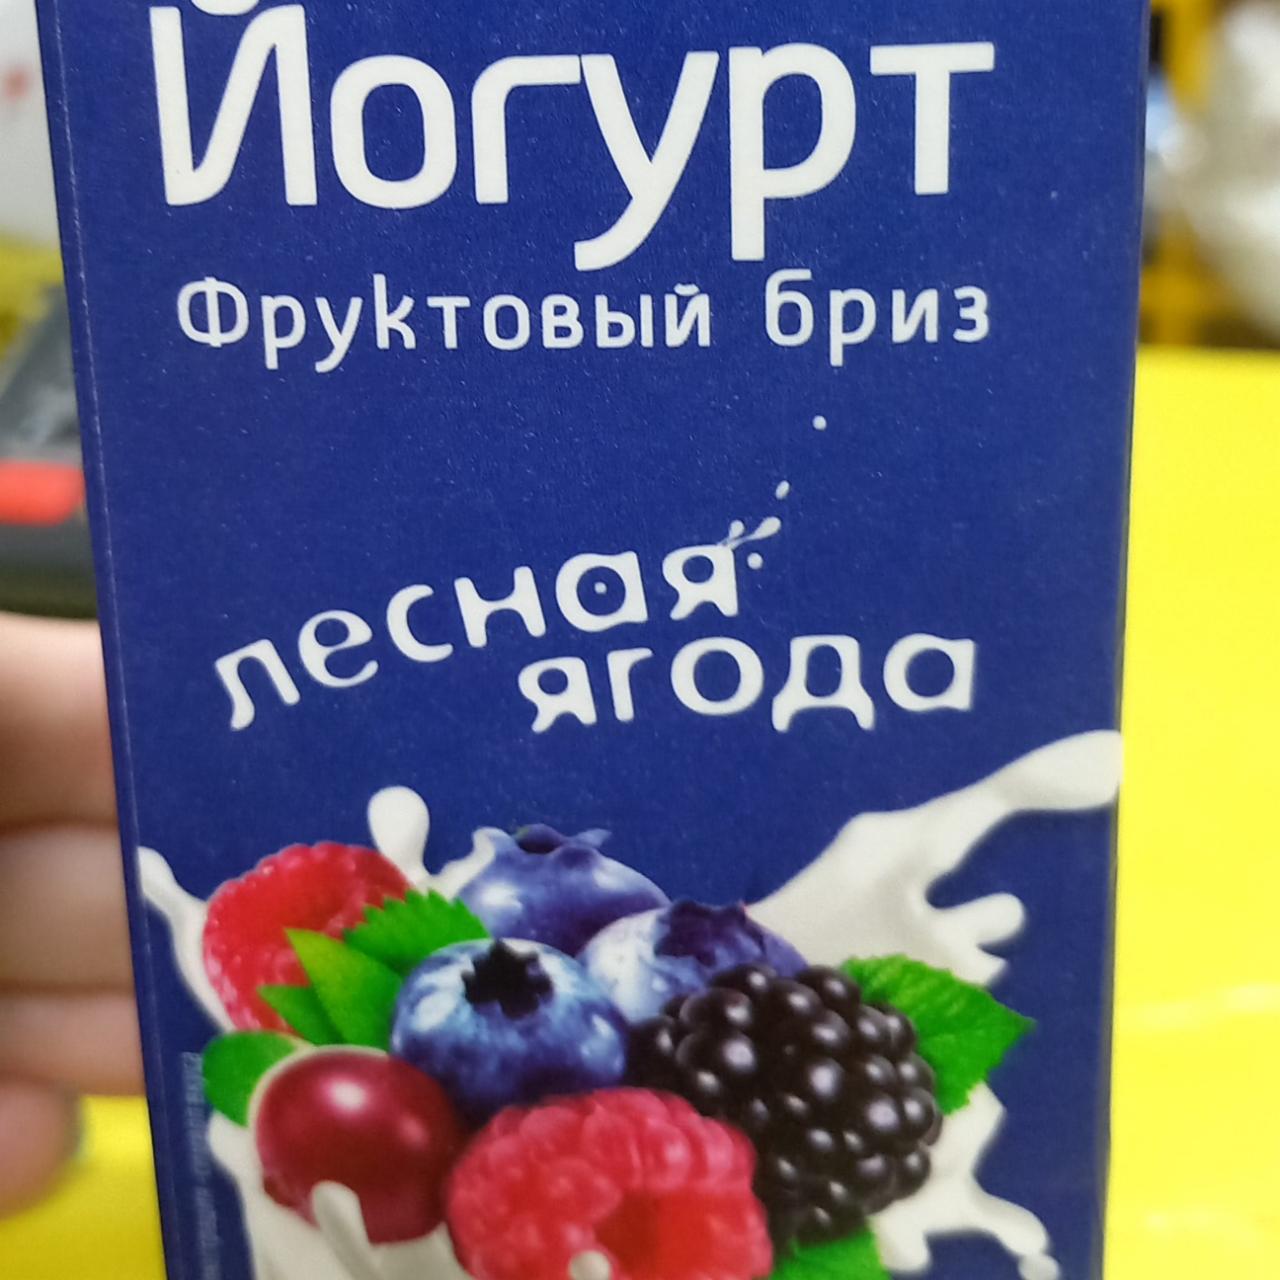 Фото - Йогурт фруктовый бриз лесная ягода Витебское молоко